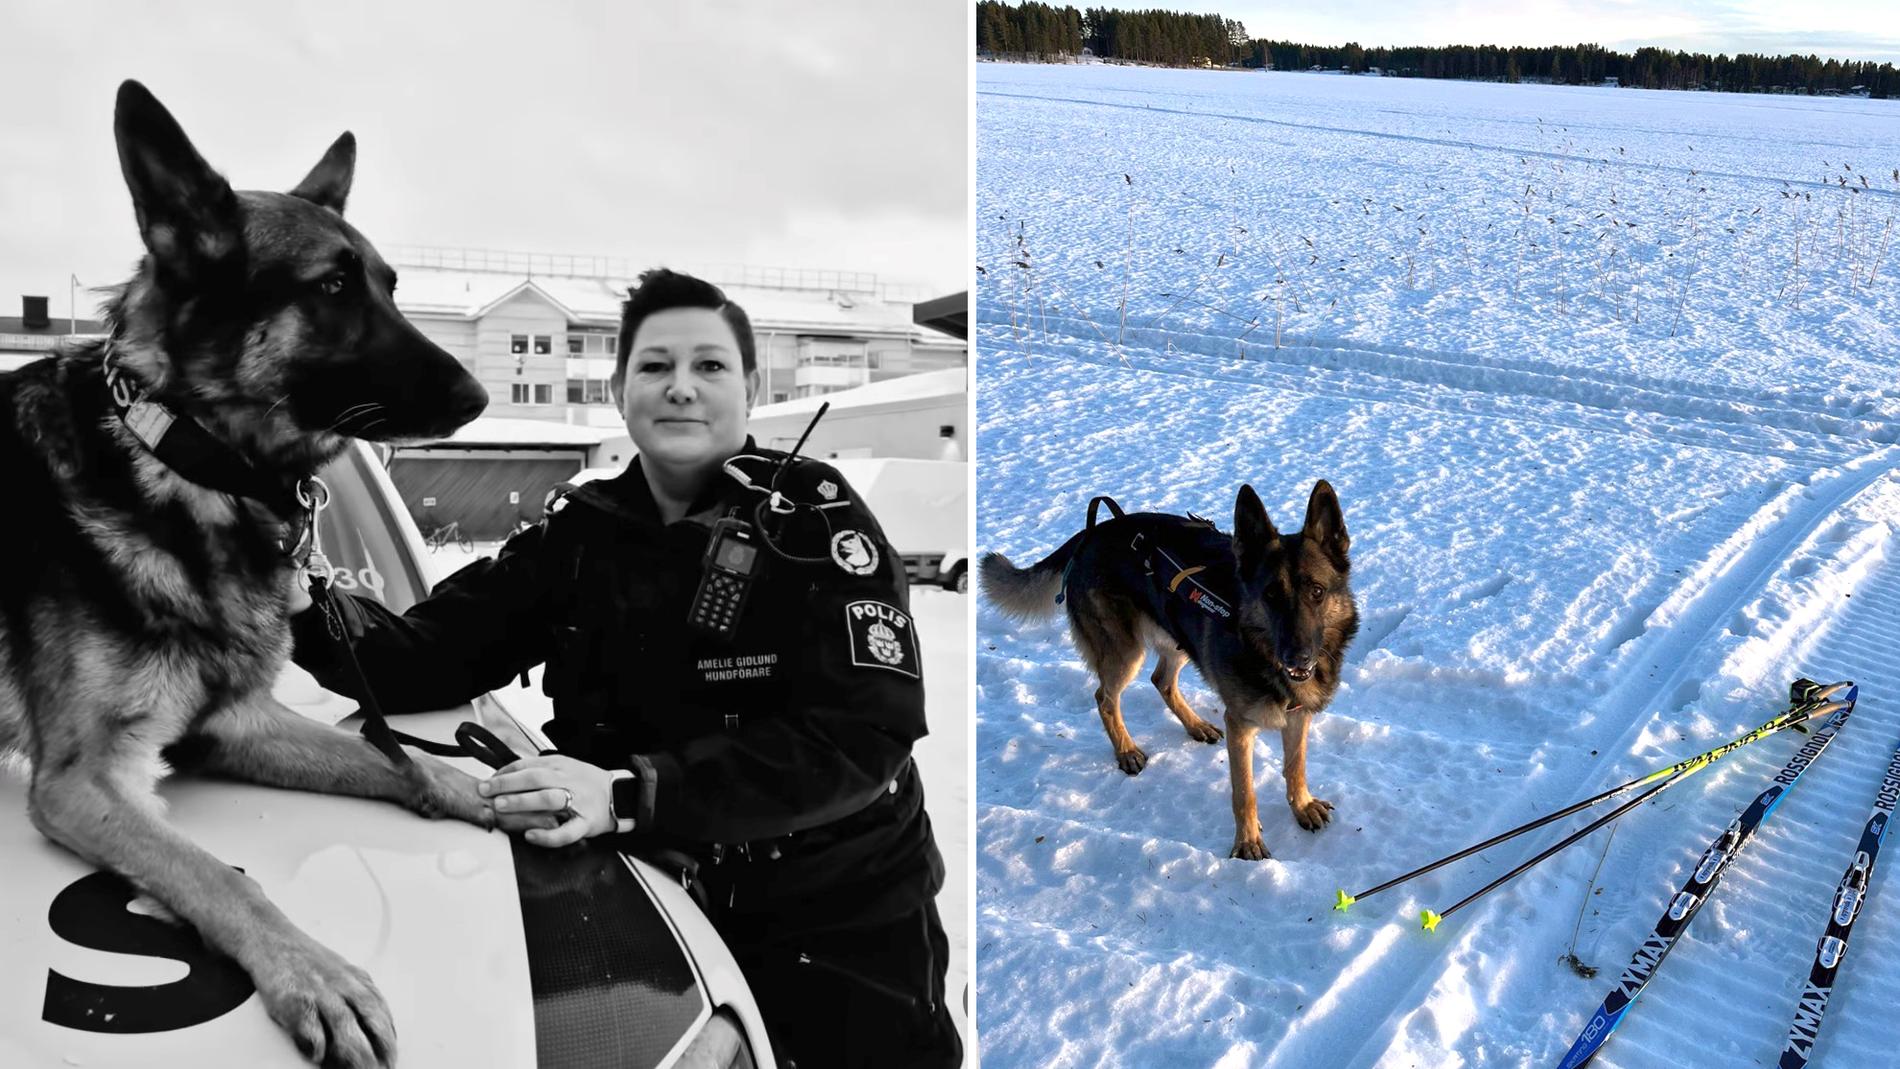 Ojje och Amelie Gidlund utgår från Luleå, så de är vana vid att arbeta i kyla och snö, även om det är snäppet kallare i Övertorneå.